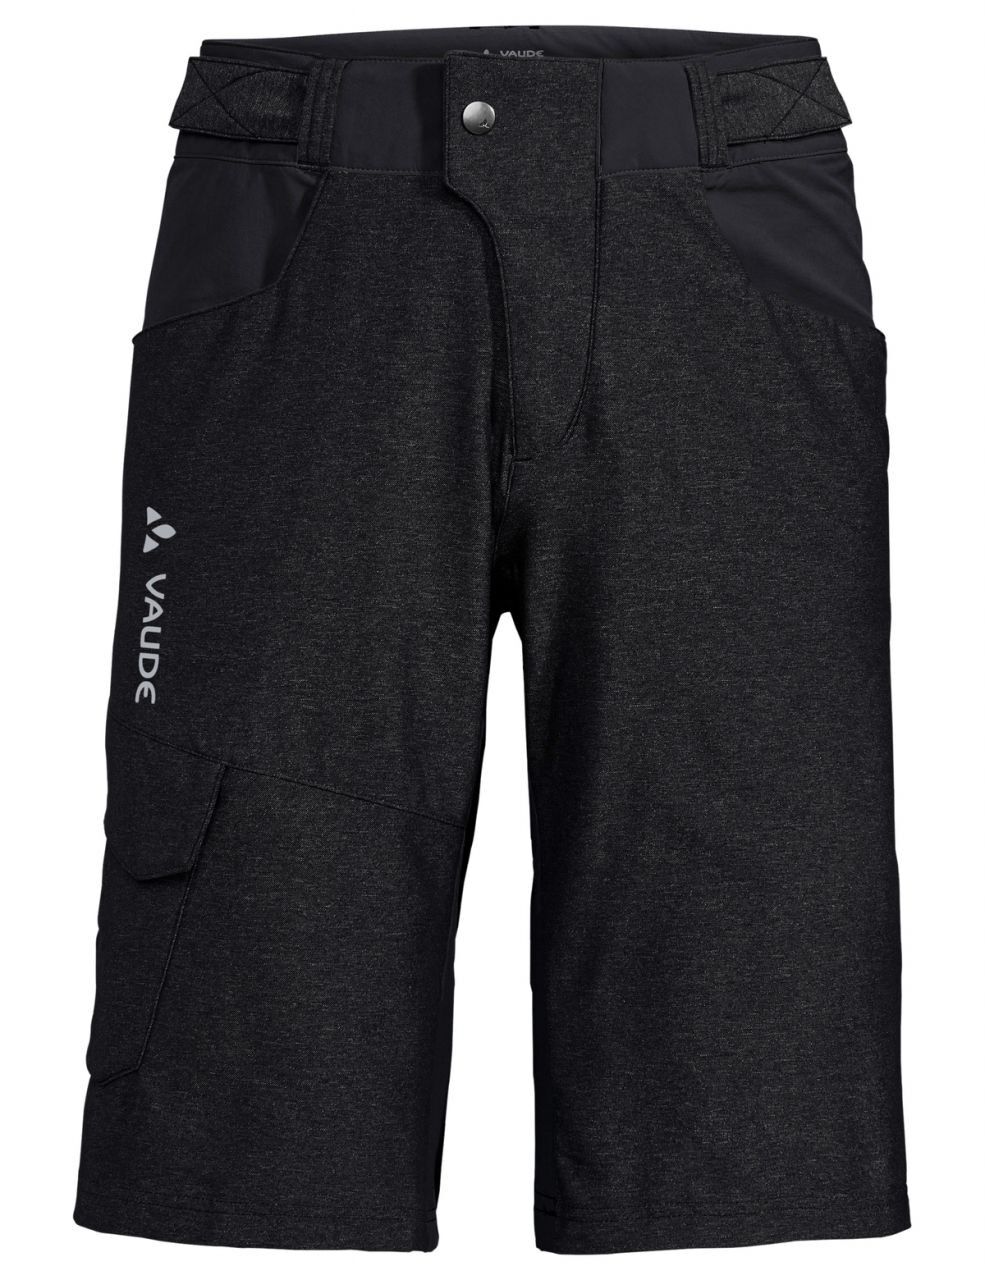 Vaude Tremalzo Shorts III - MTB shorts - Men's